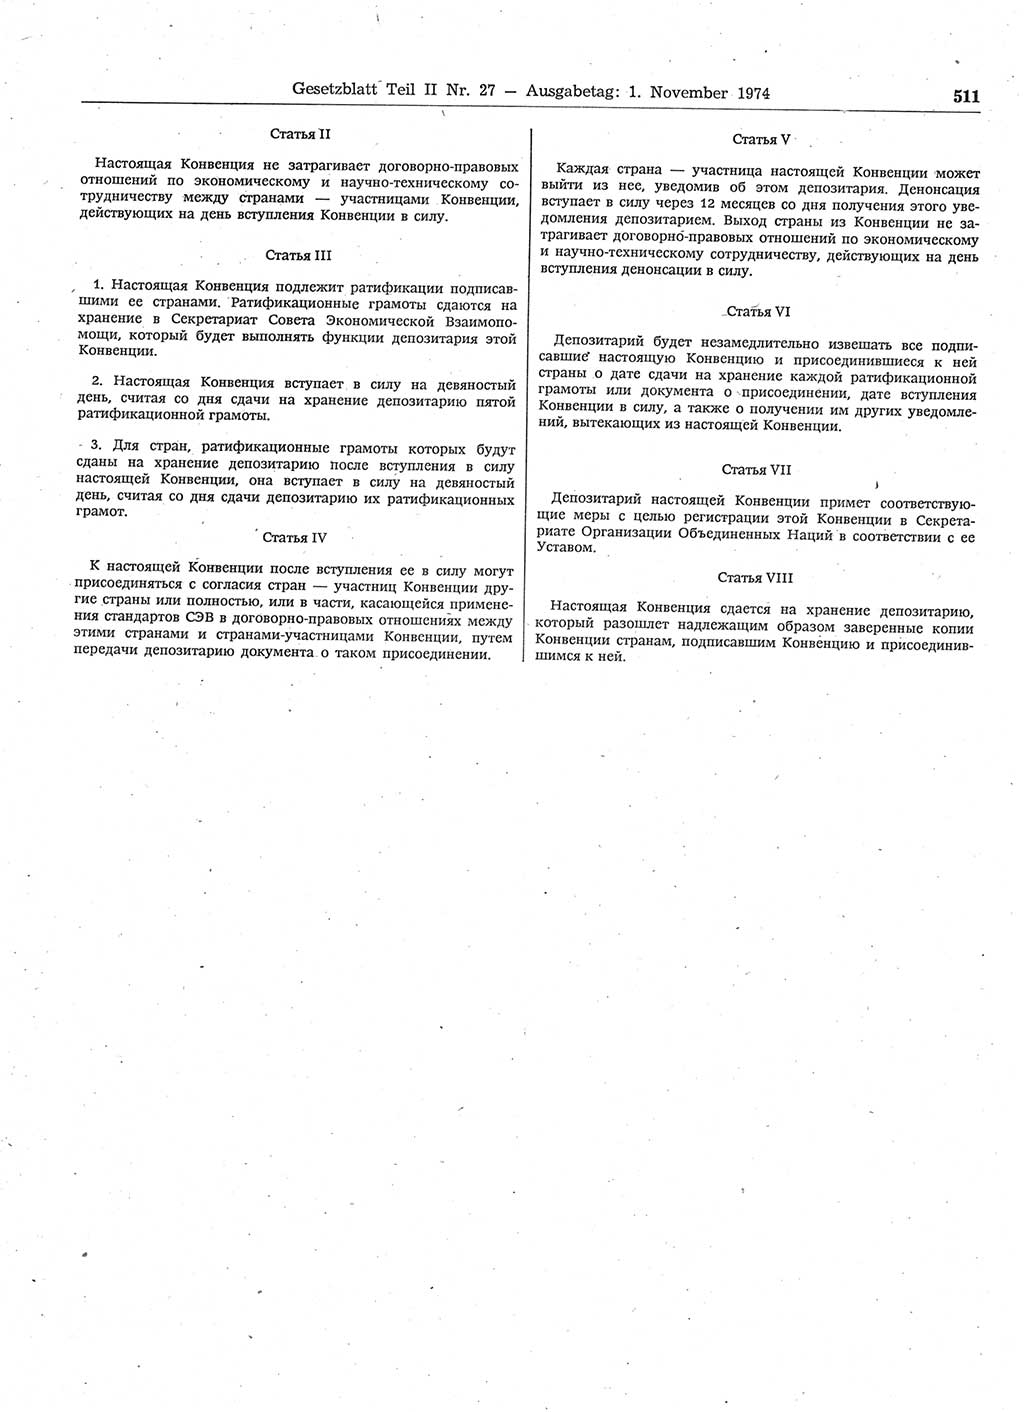 Gesetzblatt (GBl.) der Deutschen Demokratischen Republik (DDR) Teil ⅠⅠ 1974, Seite 511 (GBl. DDR ⅠⅠ 1974, S. 511)